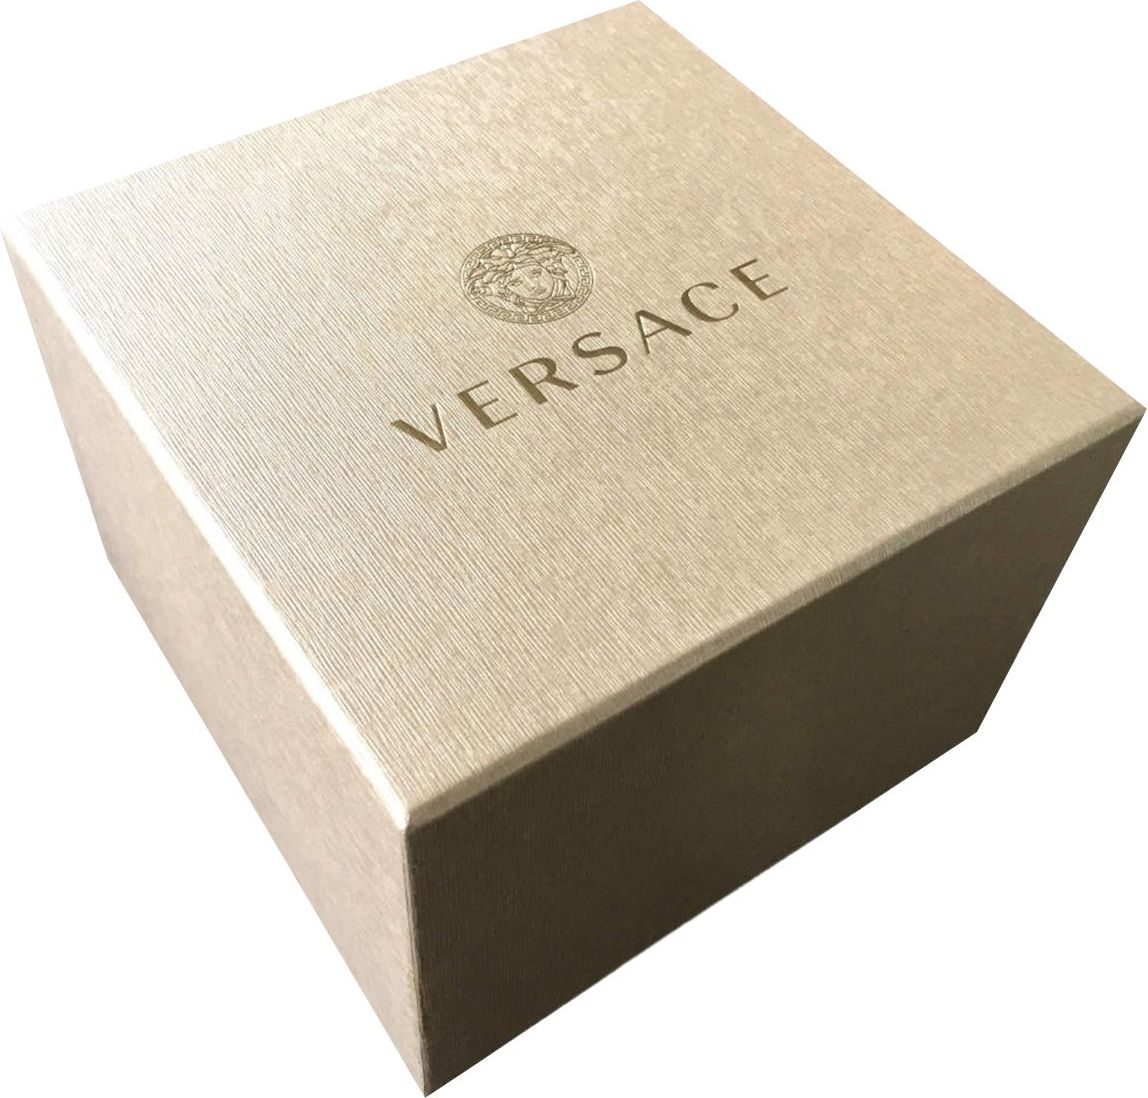 Versace VE3A00320 Hellenyium heren horloge 42 mm Groen